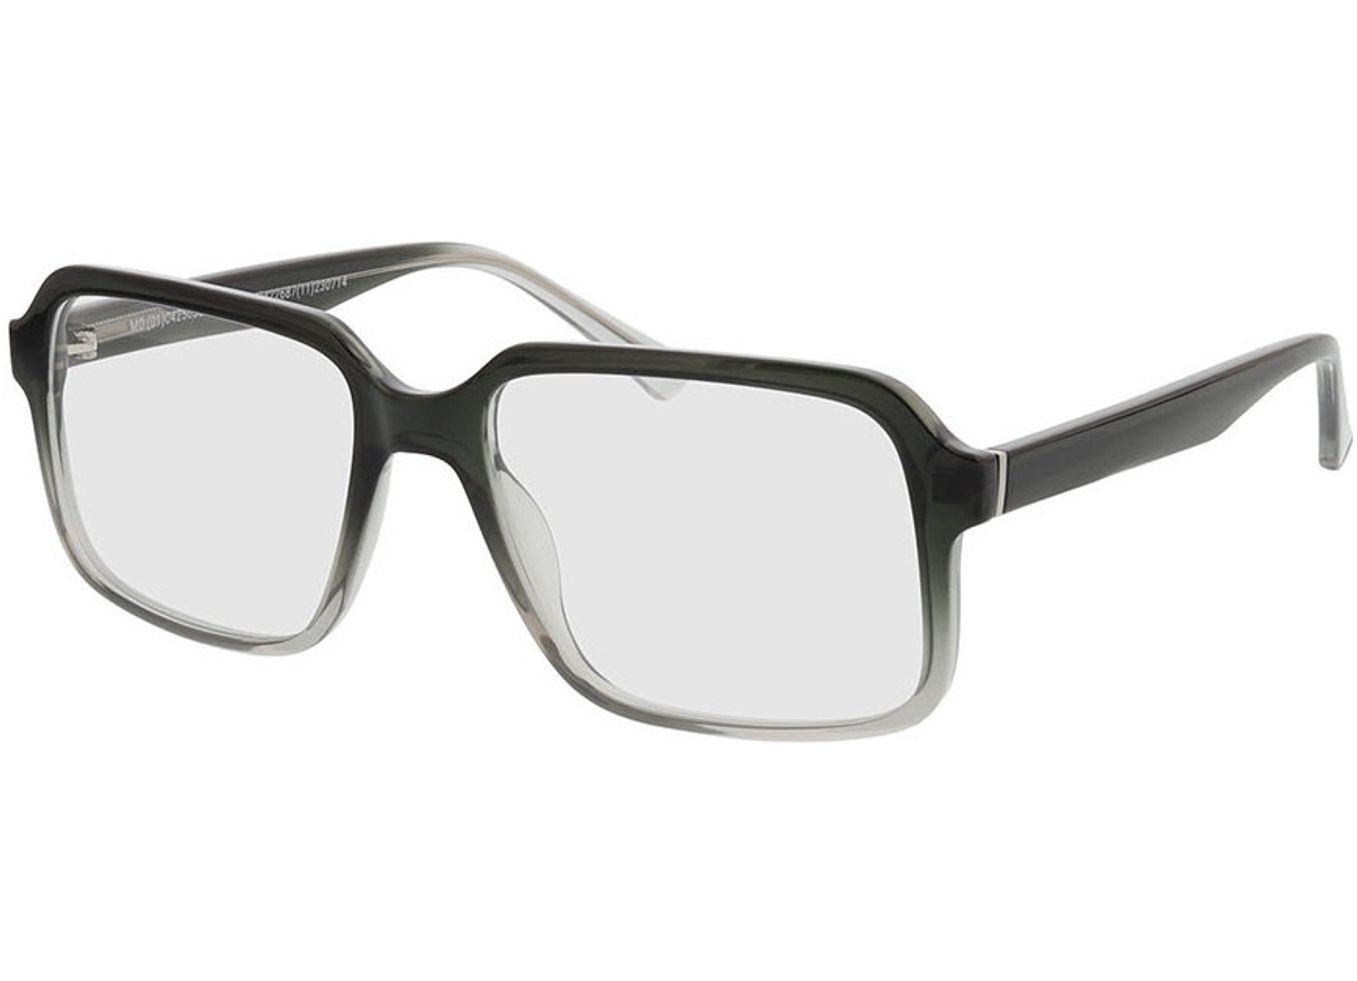 Trenton - grau-verlauf Arbeitsplatzbrille, Vollrand, Eckig von Brille24 Collection